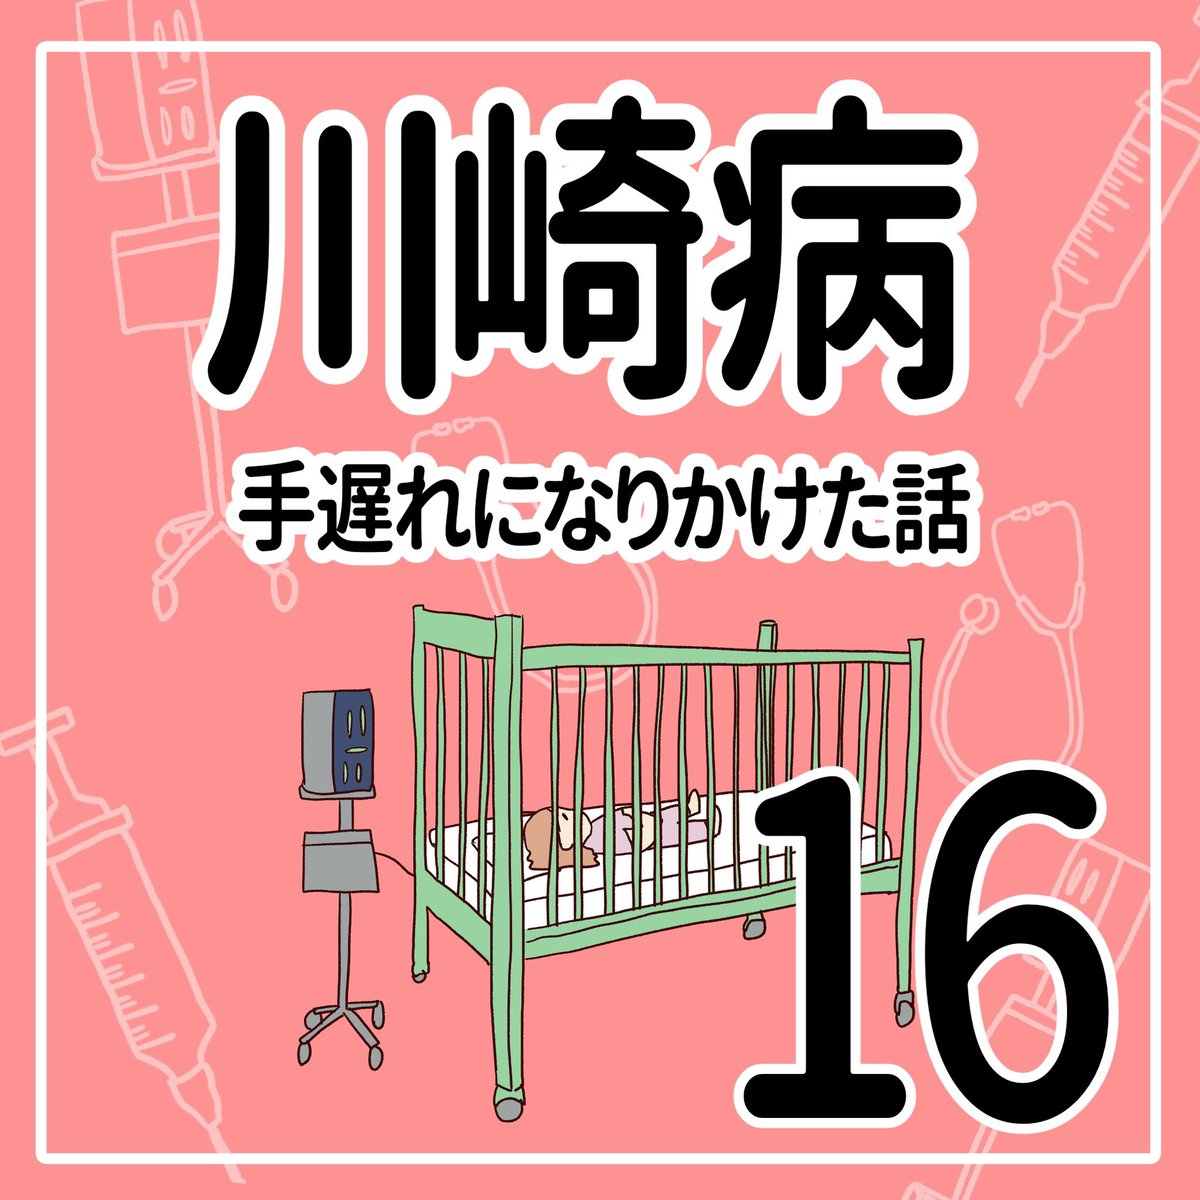 川崎病 手遅れになりかけた話【16】
(1/2)

#育児漫画 #川崎病 